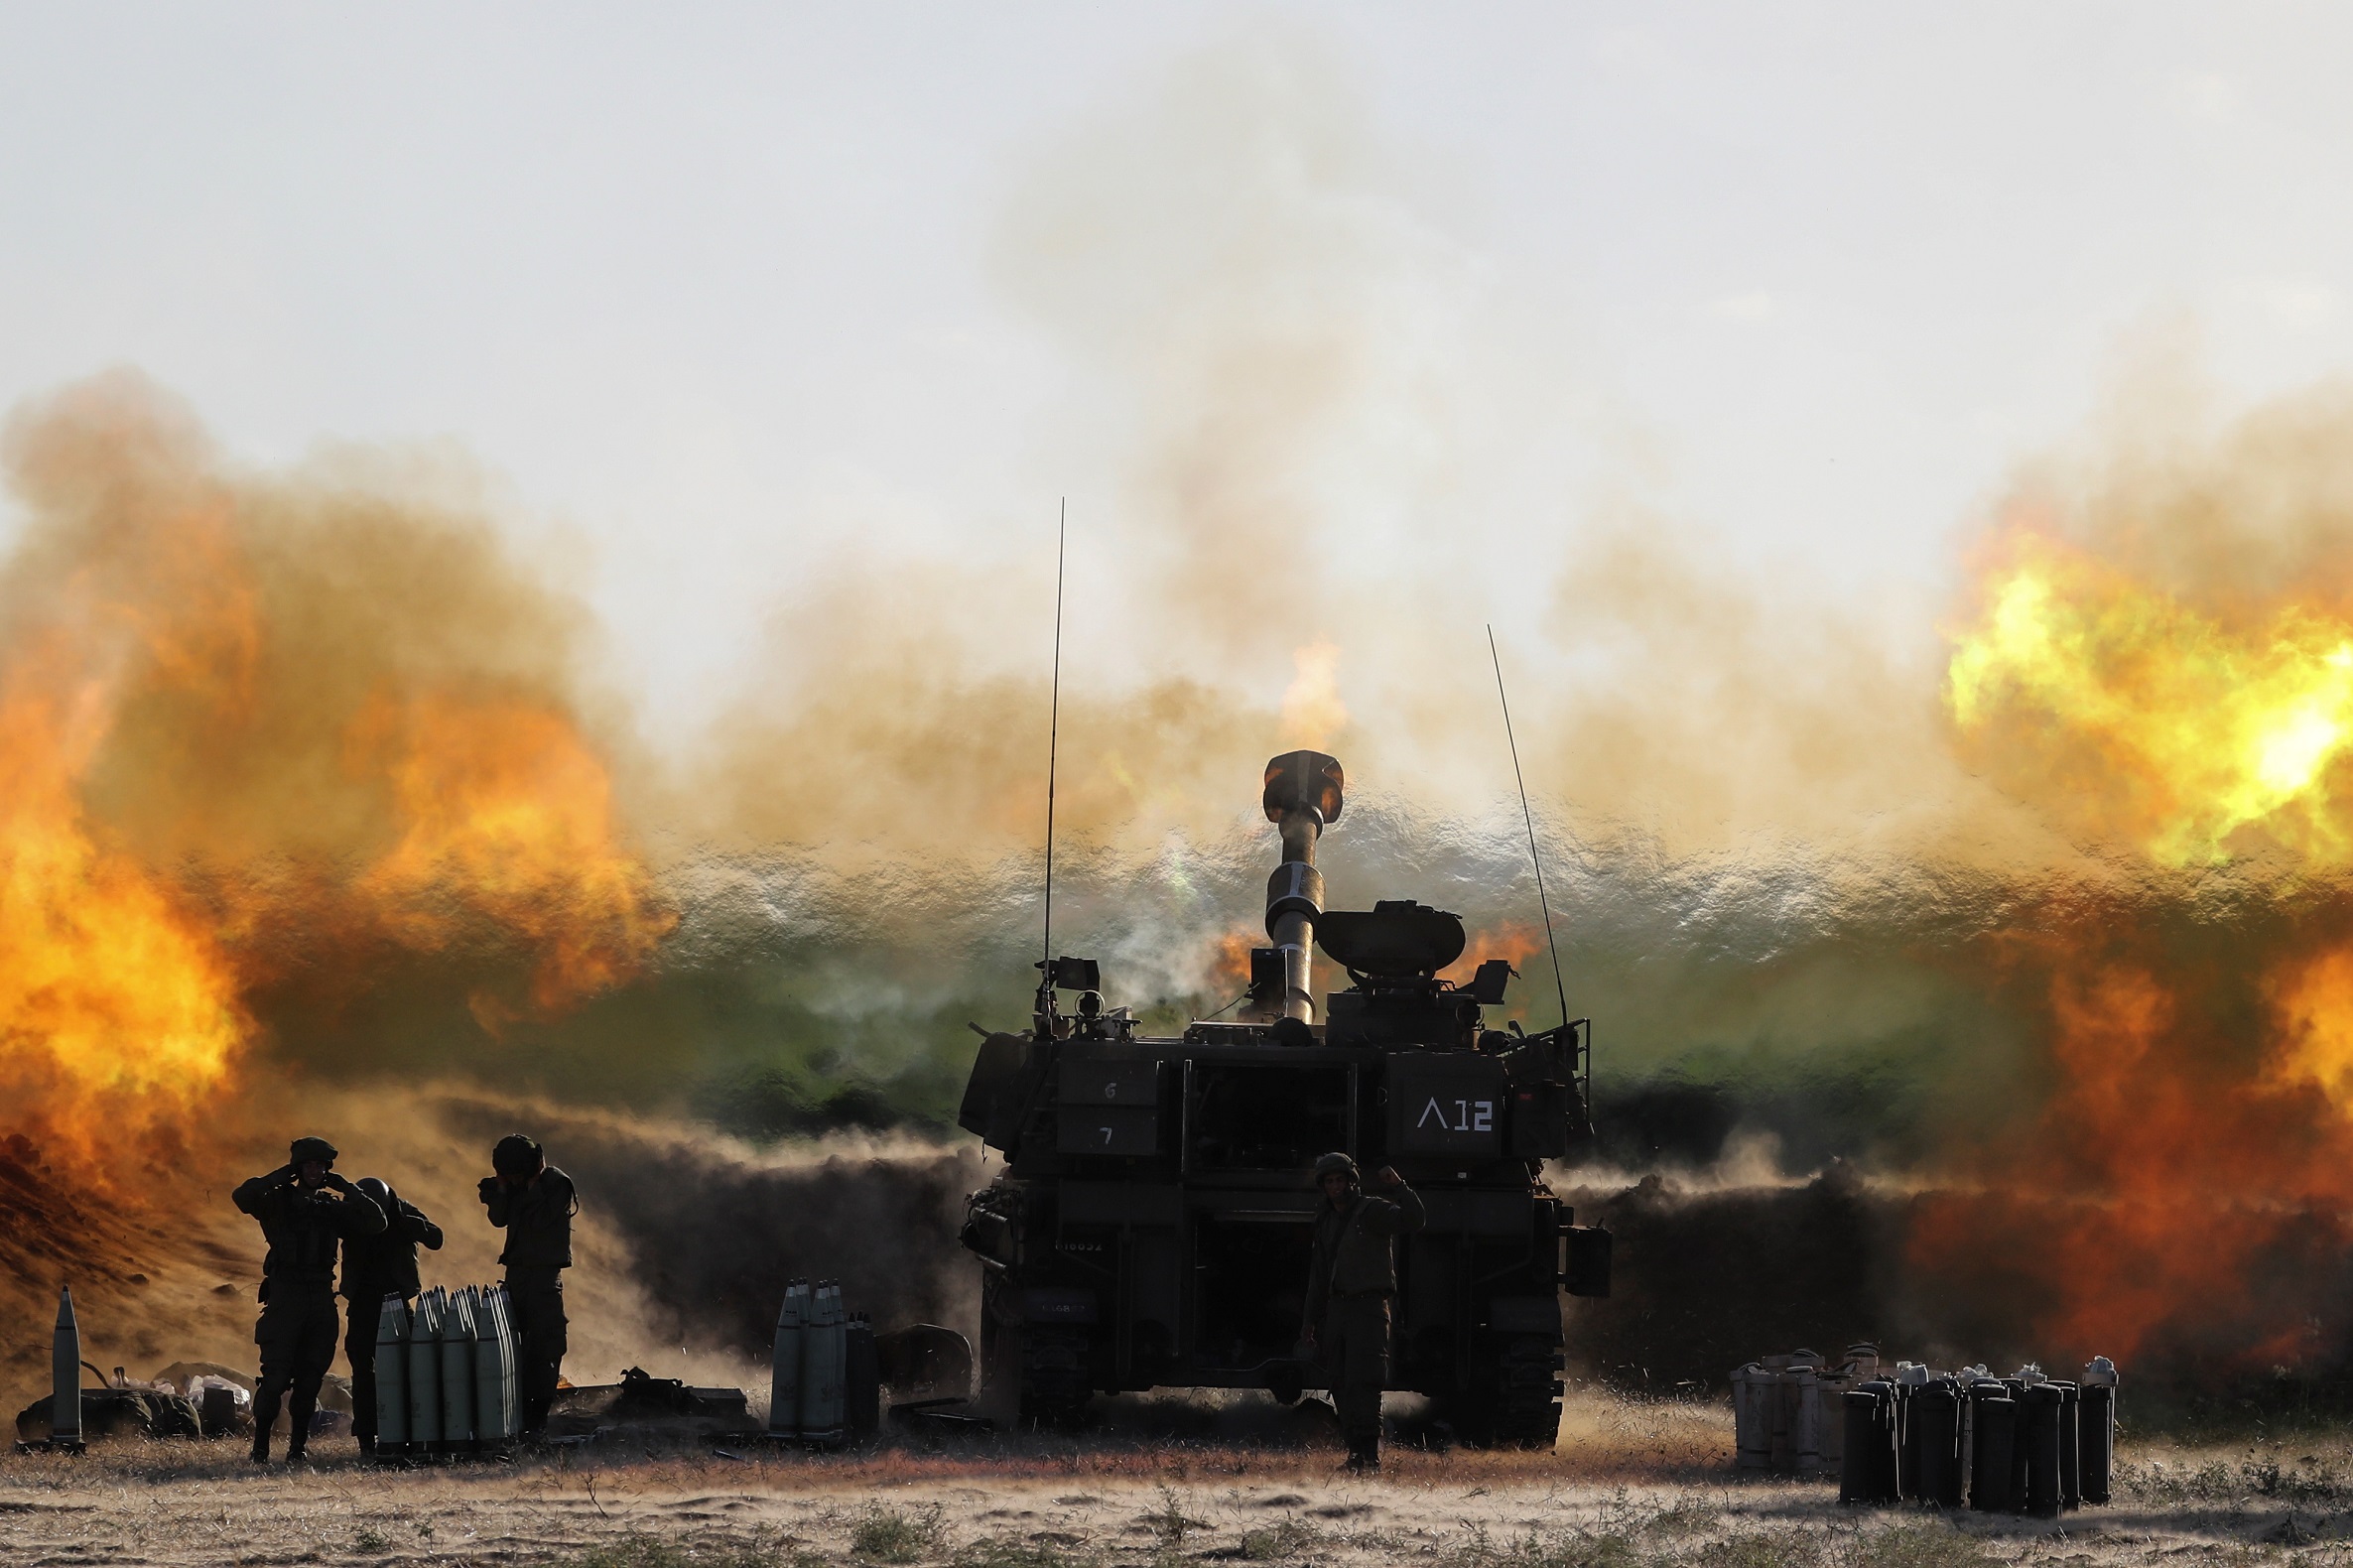 جنود إسرائيليون يعملون في وحدة مدفعية في أثناء قصفها بالقرب من الحدود مع قطاع غزة، 19 أيار/مايو 2021. (رويترز)